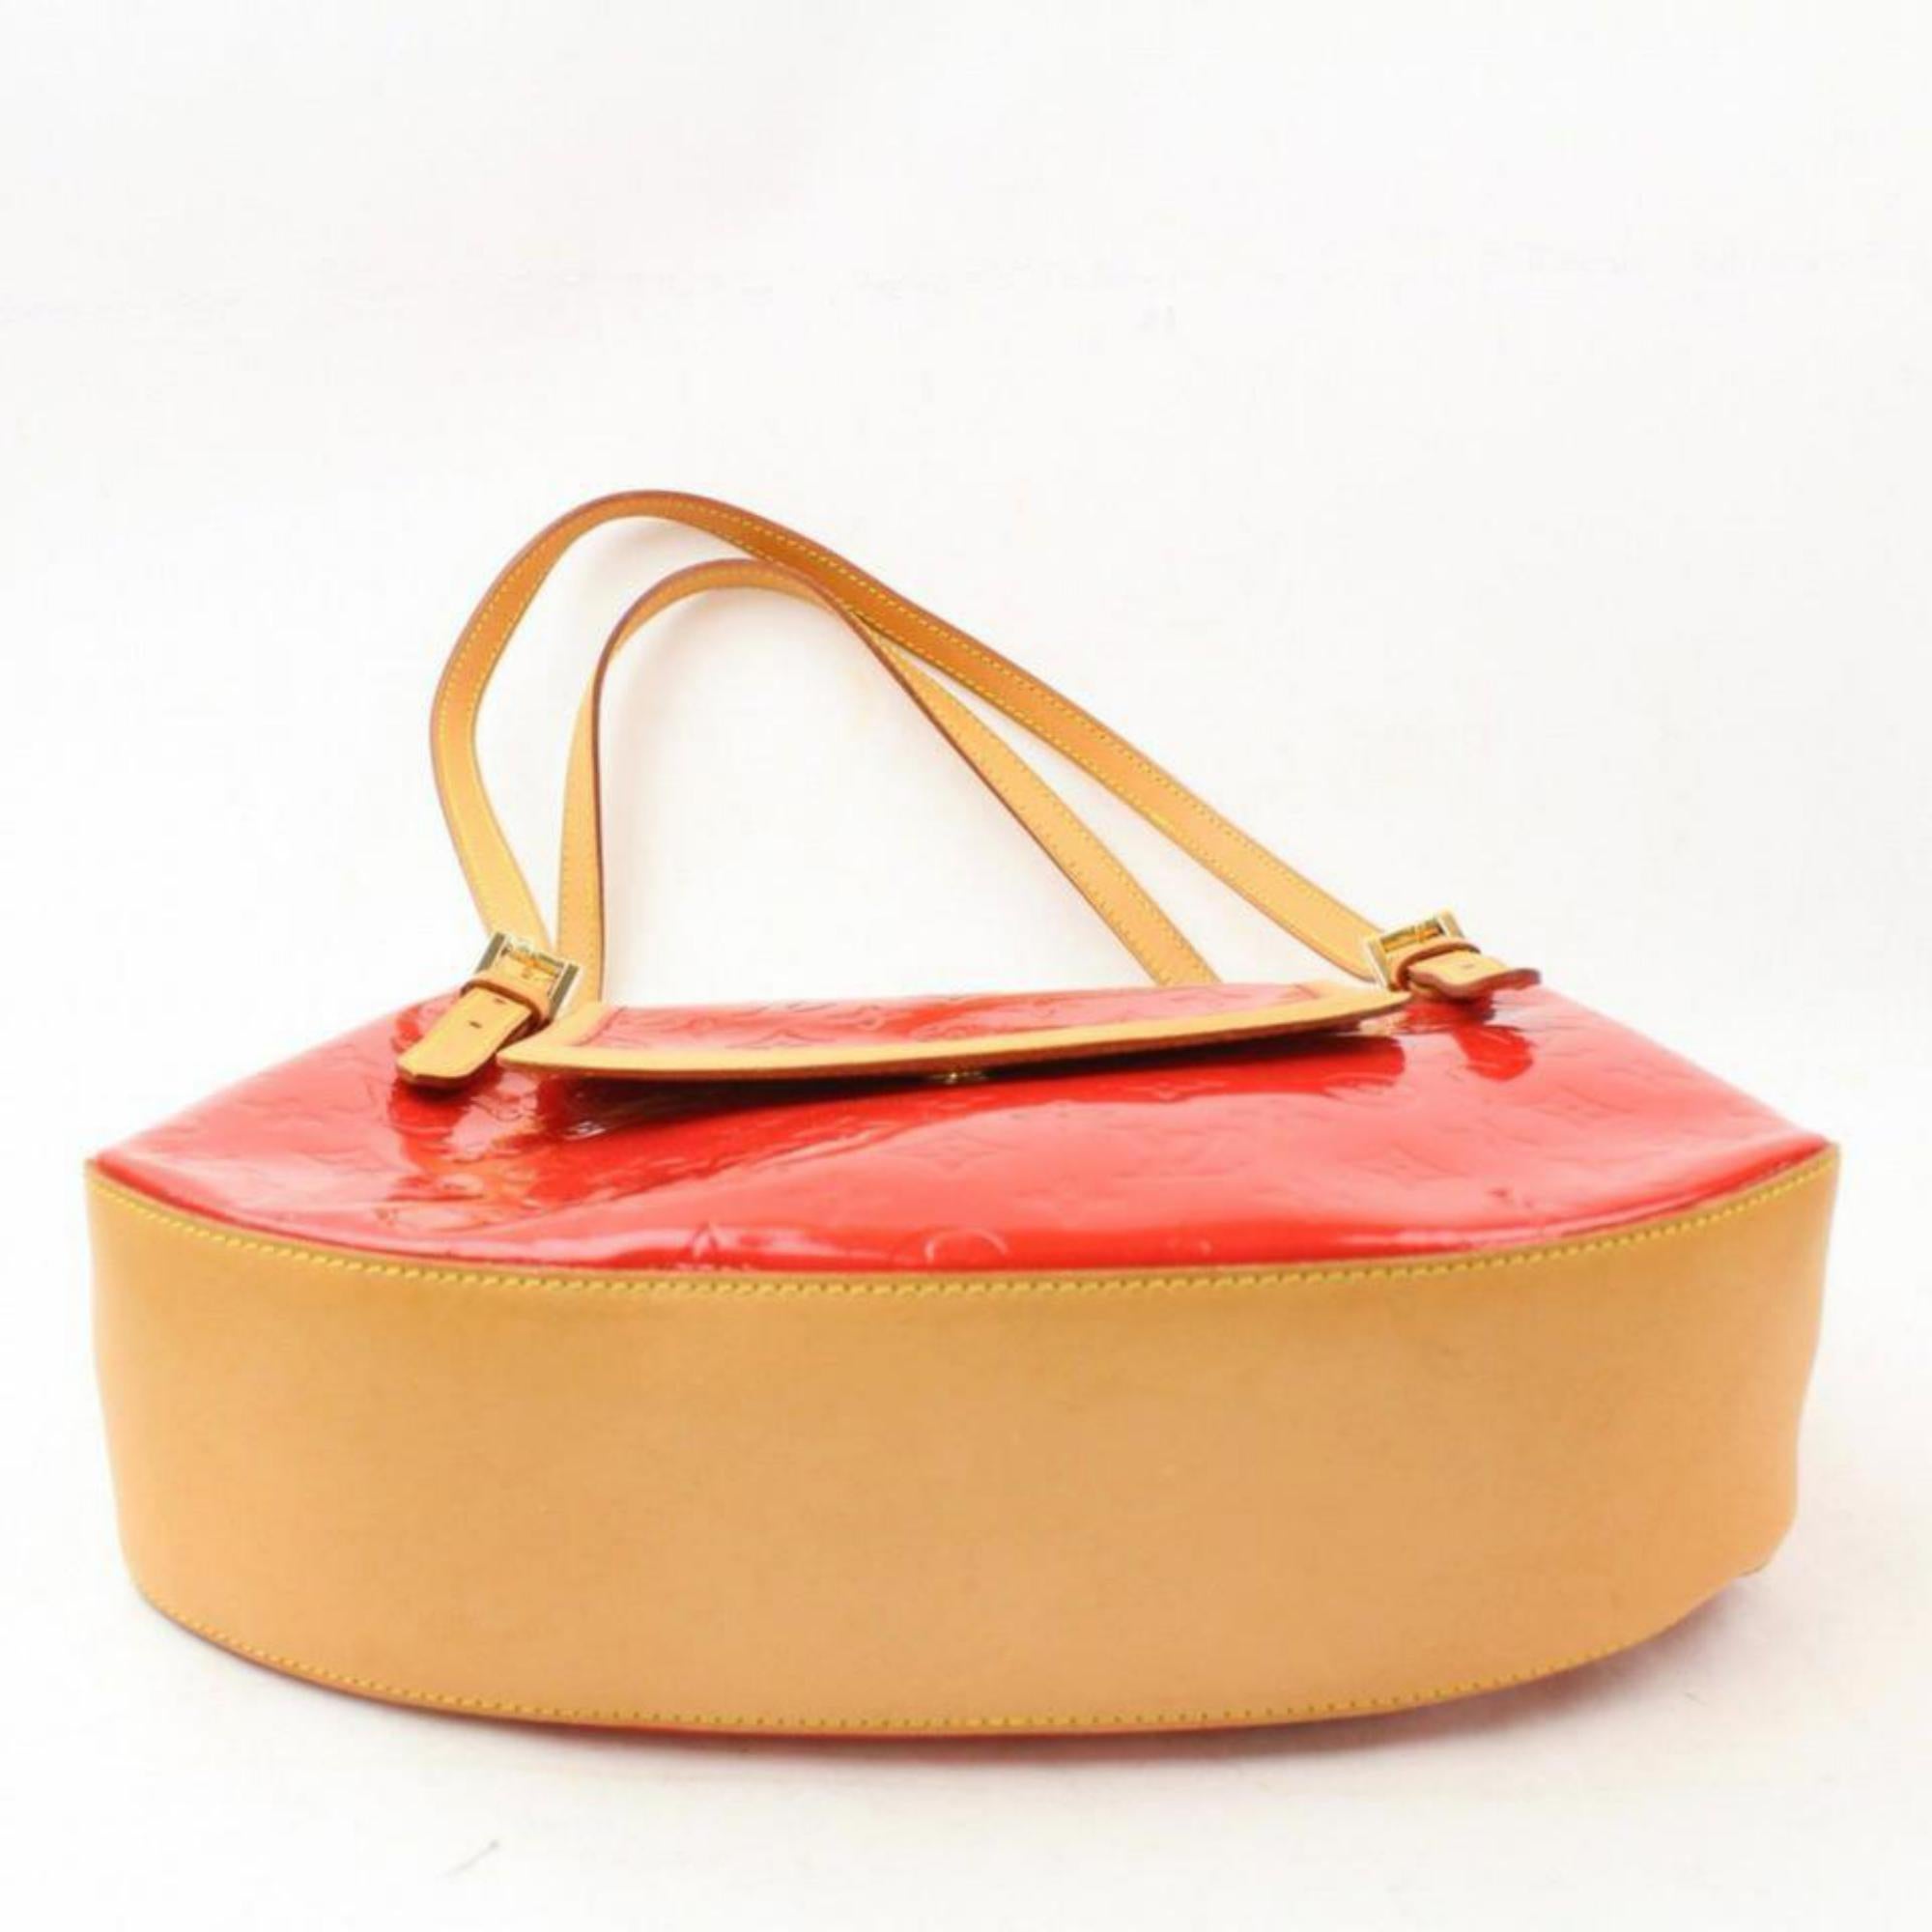 Louis Vuitton Biscayne Bay Gm 869144 Red Monogram Vernis Leather Shoulder Bag For Sale 2